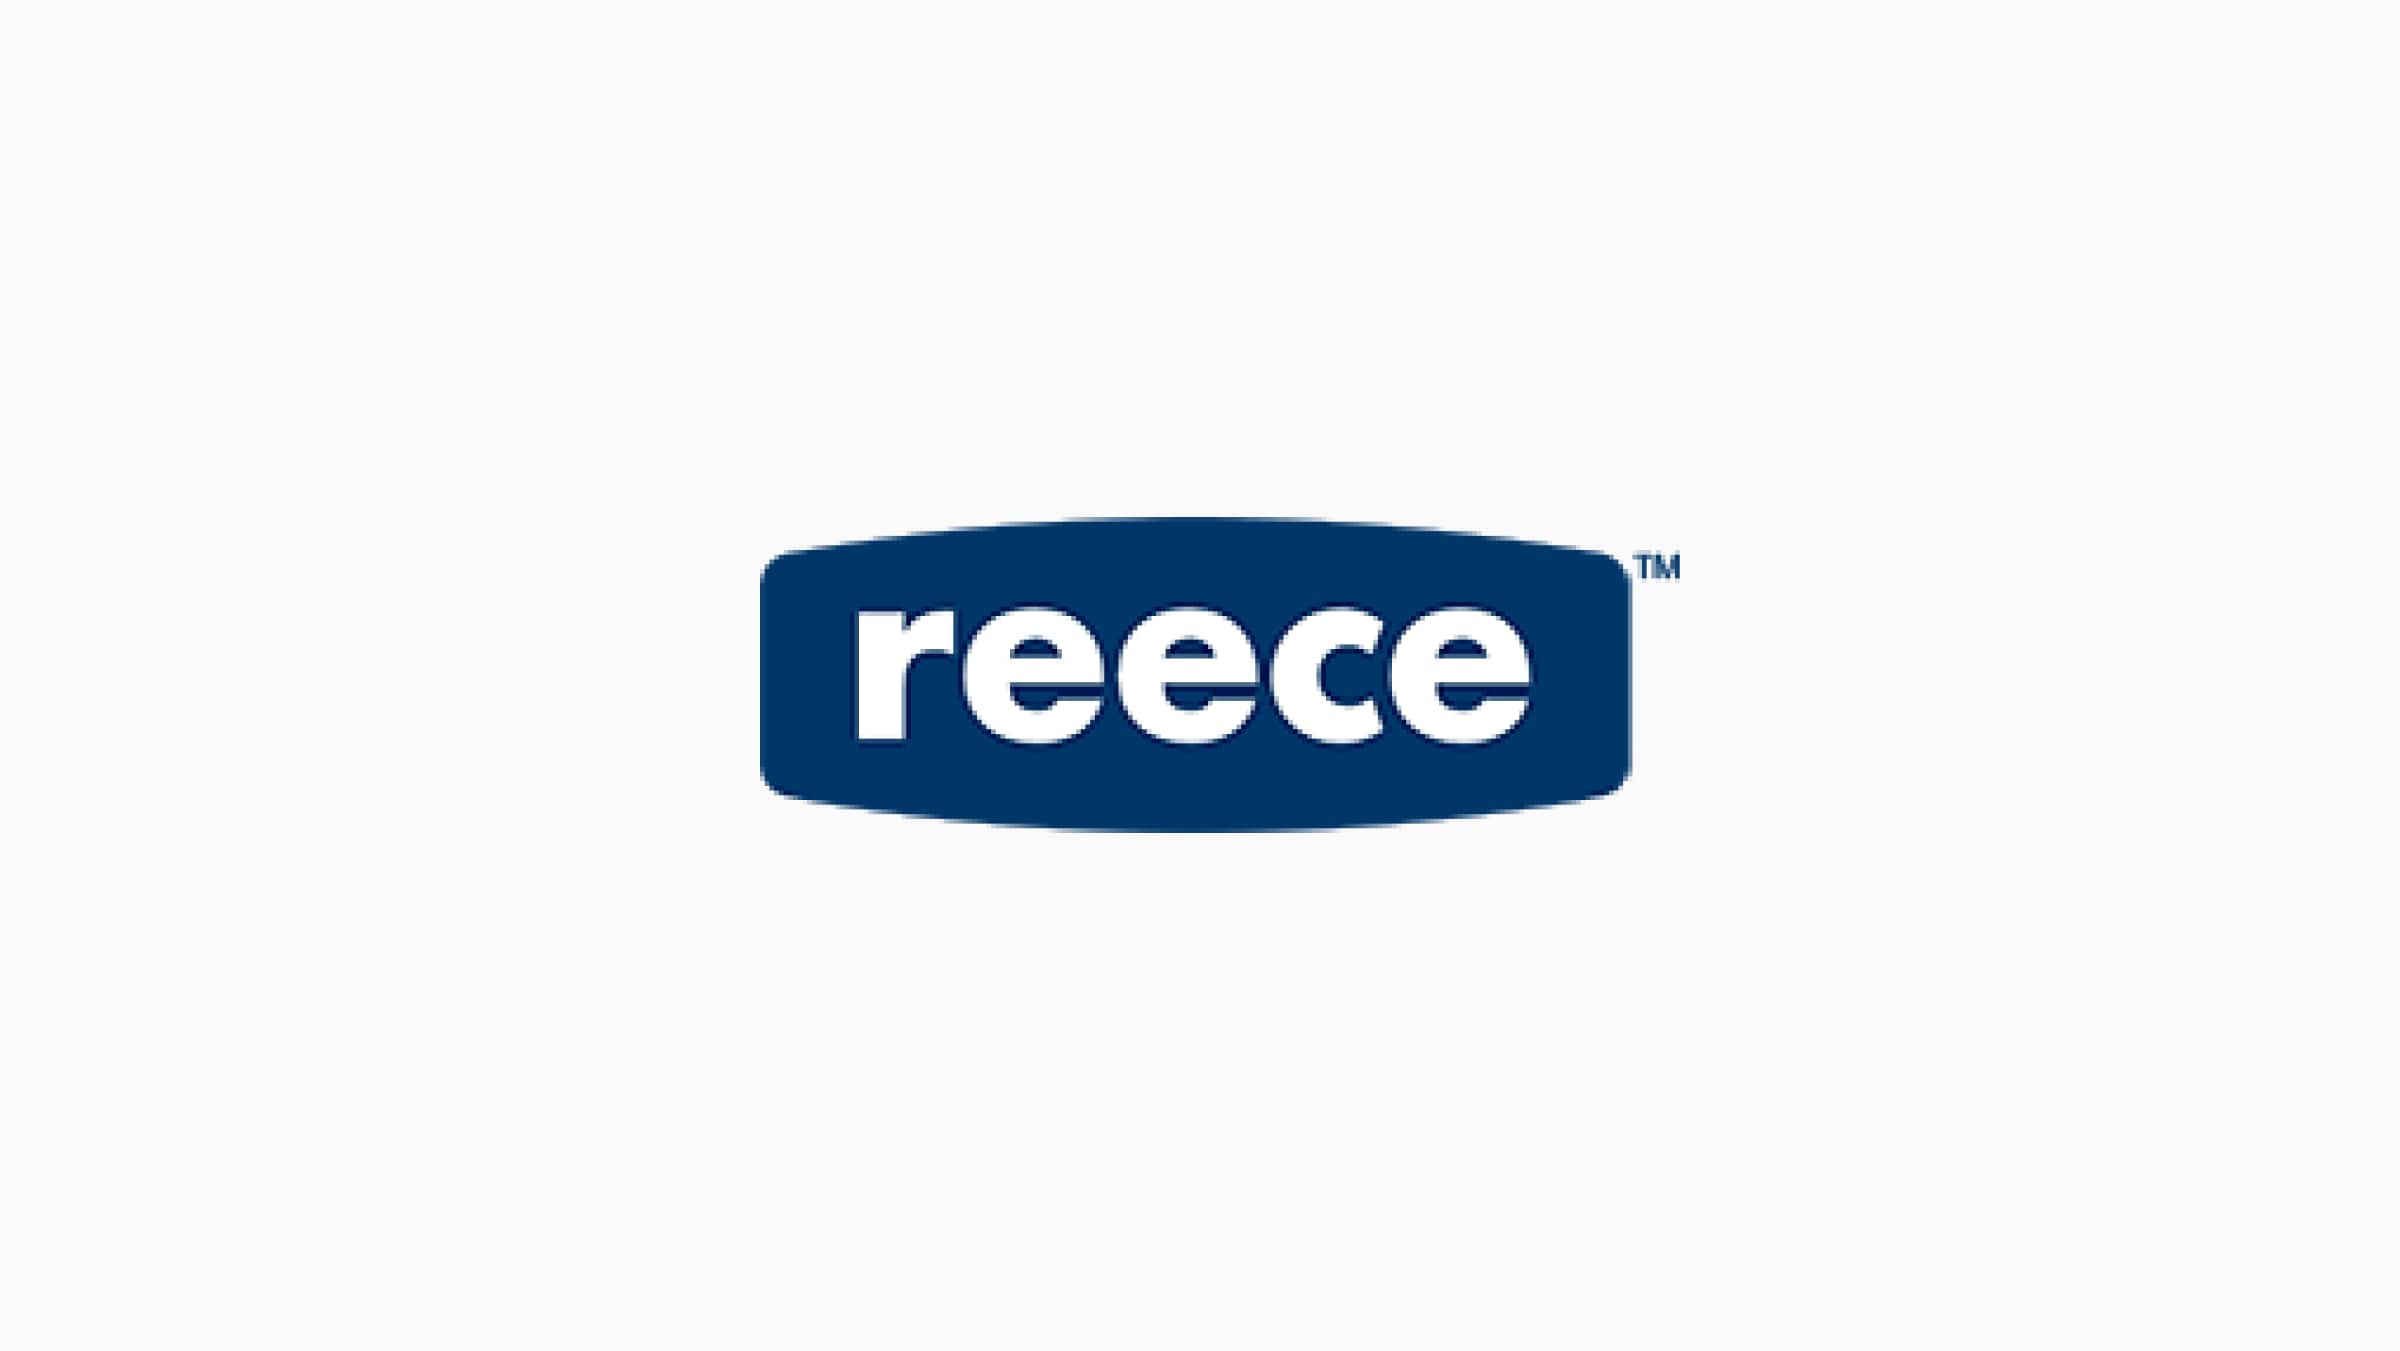 The Reece logo